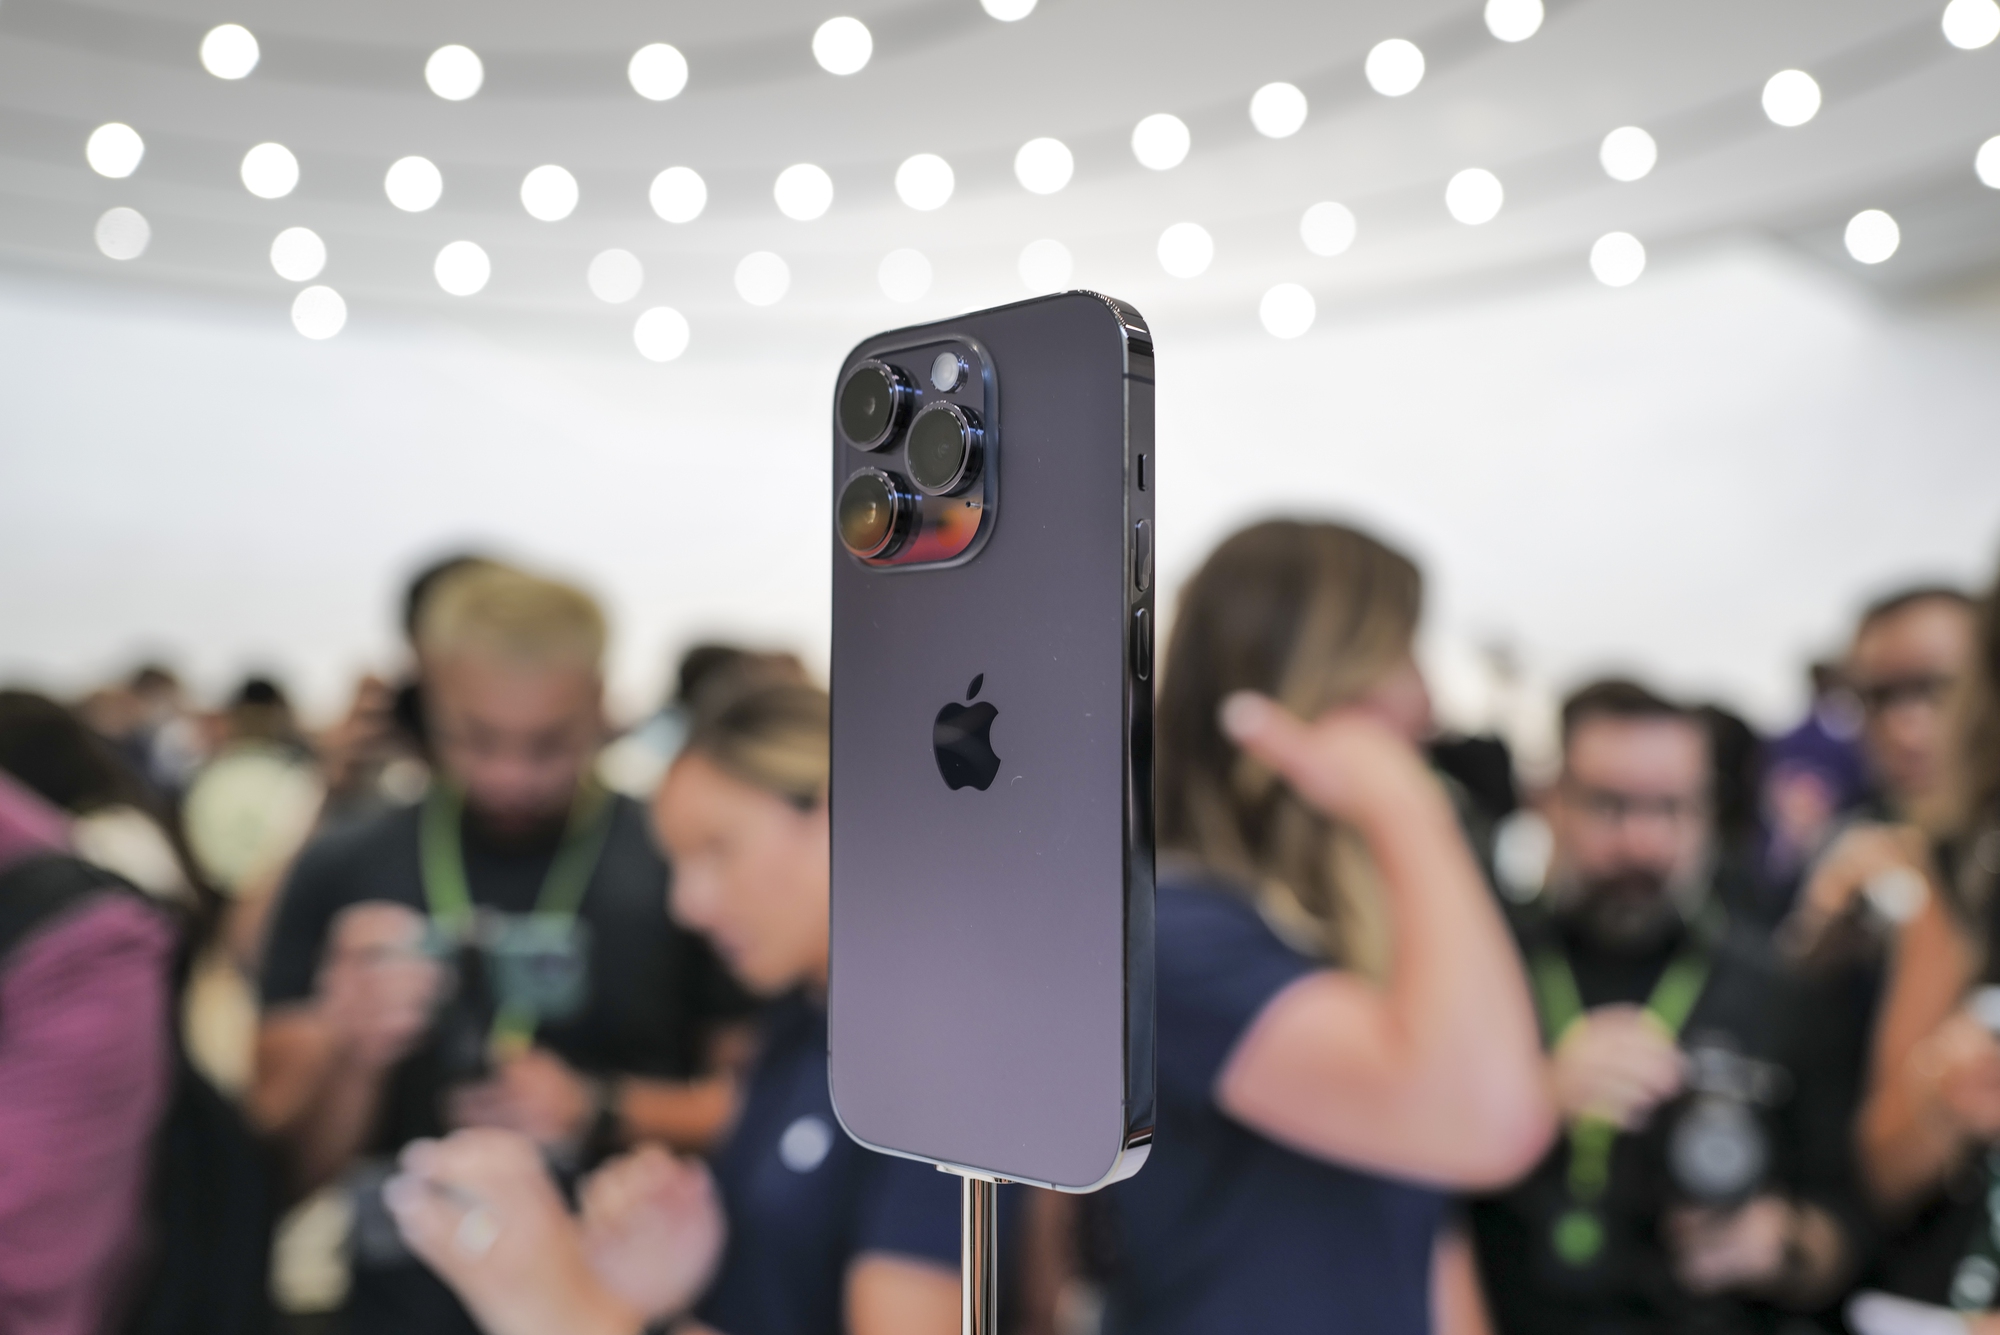 Hãy khám phá chiếc iPhone 14 Pro màu tím đầy sang trọng và tinh tế này! Với thiết kế đẹp mắt và những tính năng tiên tiến nhất, chiếc điện thoại này sẽ đem đến cho bạn trải nghiệm hoàn hảo nhất. Không chỉ là một sản phẩm, iPhone 14 Pro còn là biểu tượng của sự thành công và phong cách.